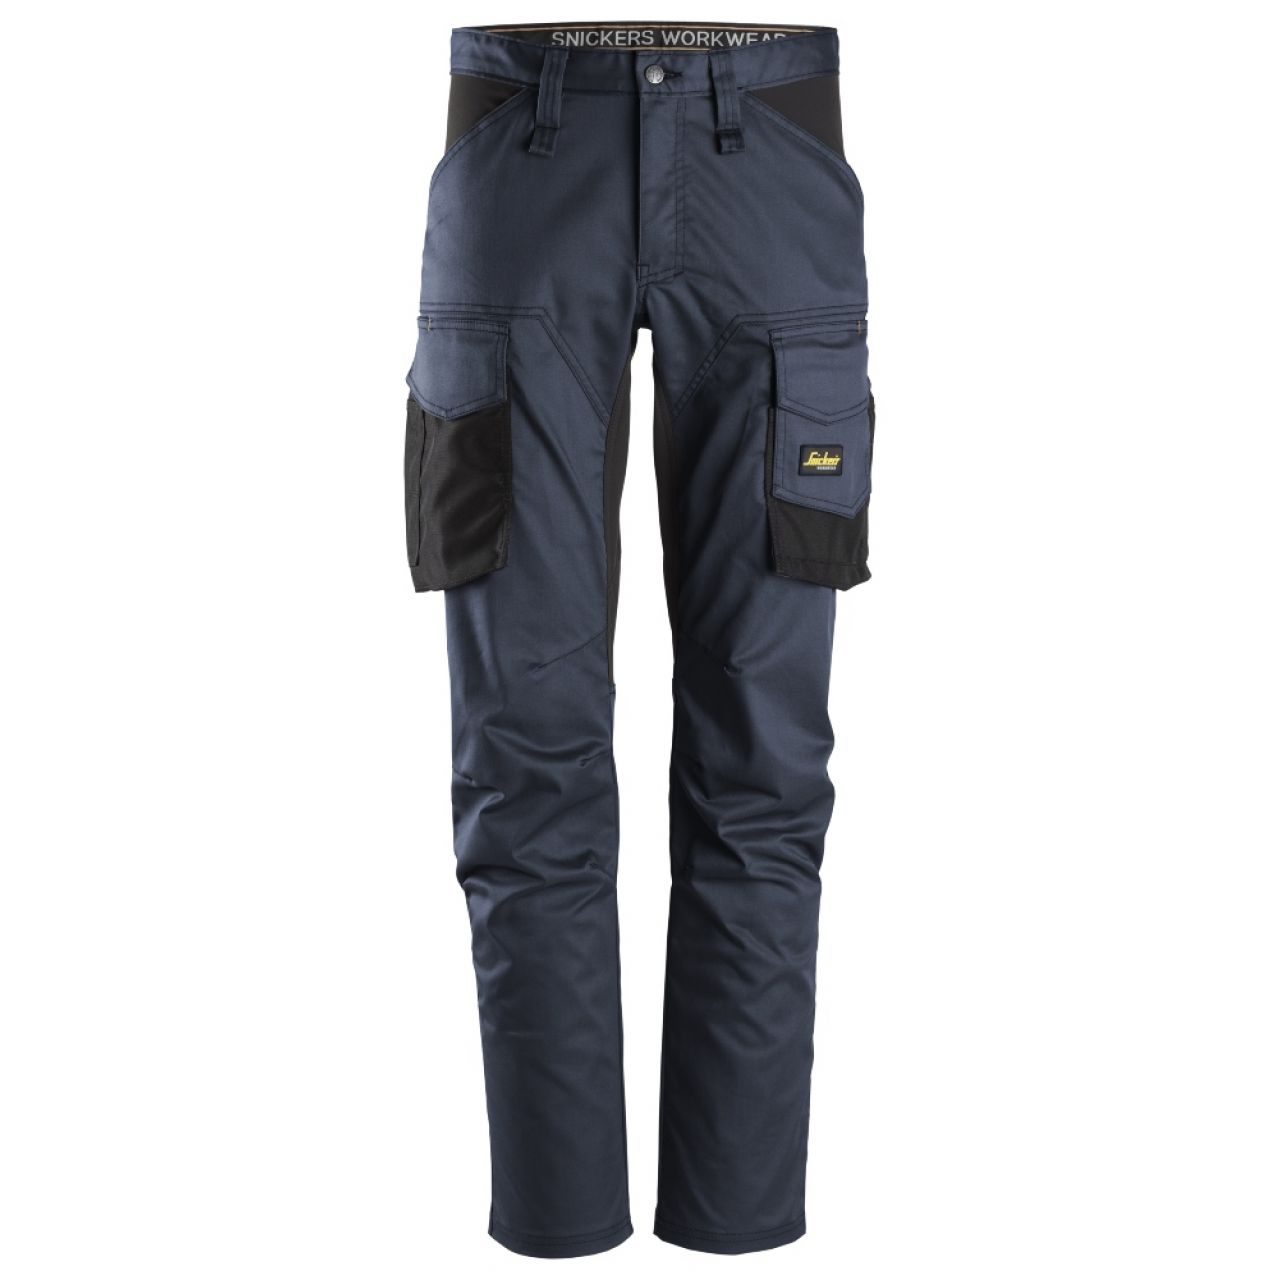 6803 Pantalones largos de trabajo elásticos sin bolsillos para las rodilleras AllroundWork azul marino-negro talla 124